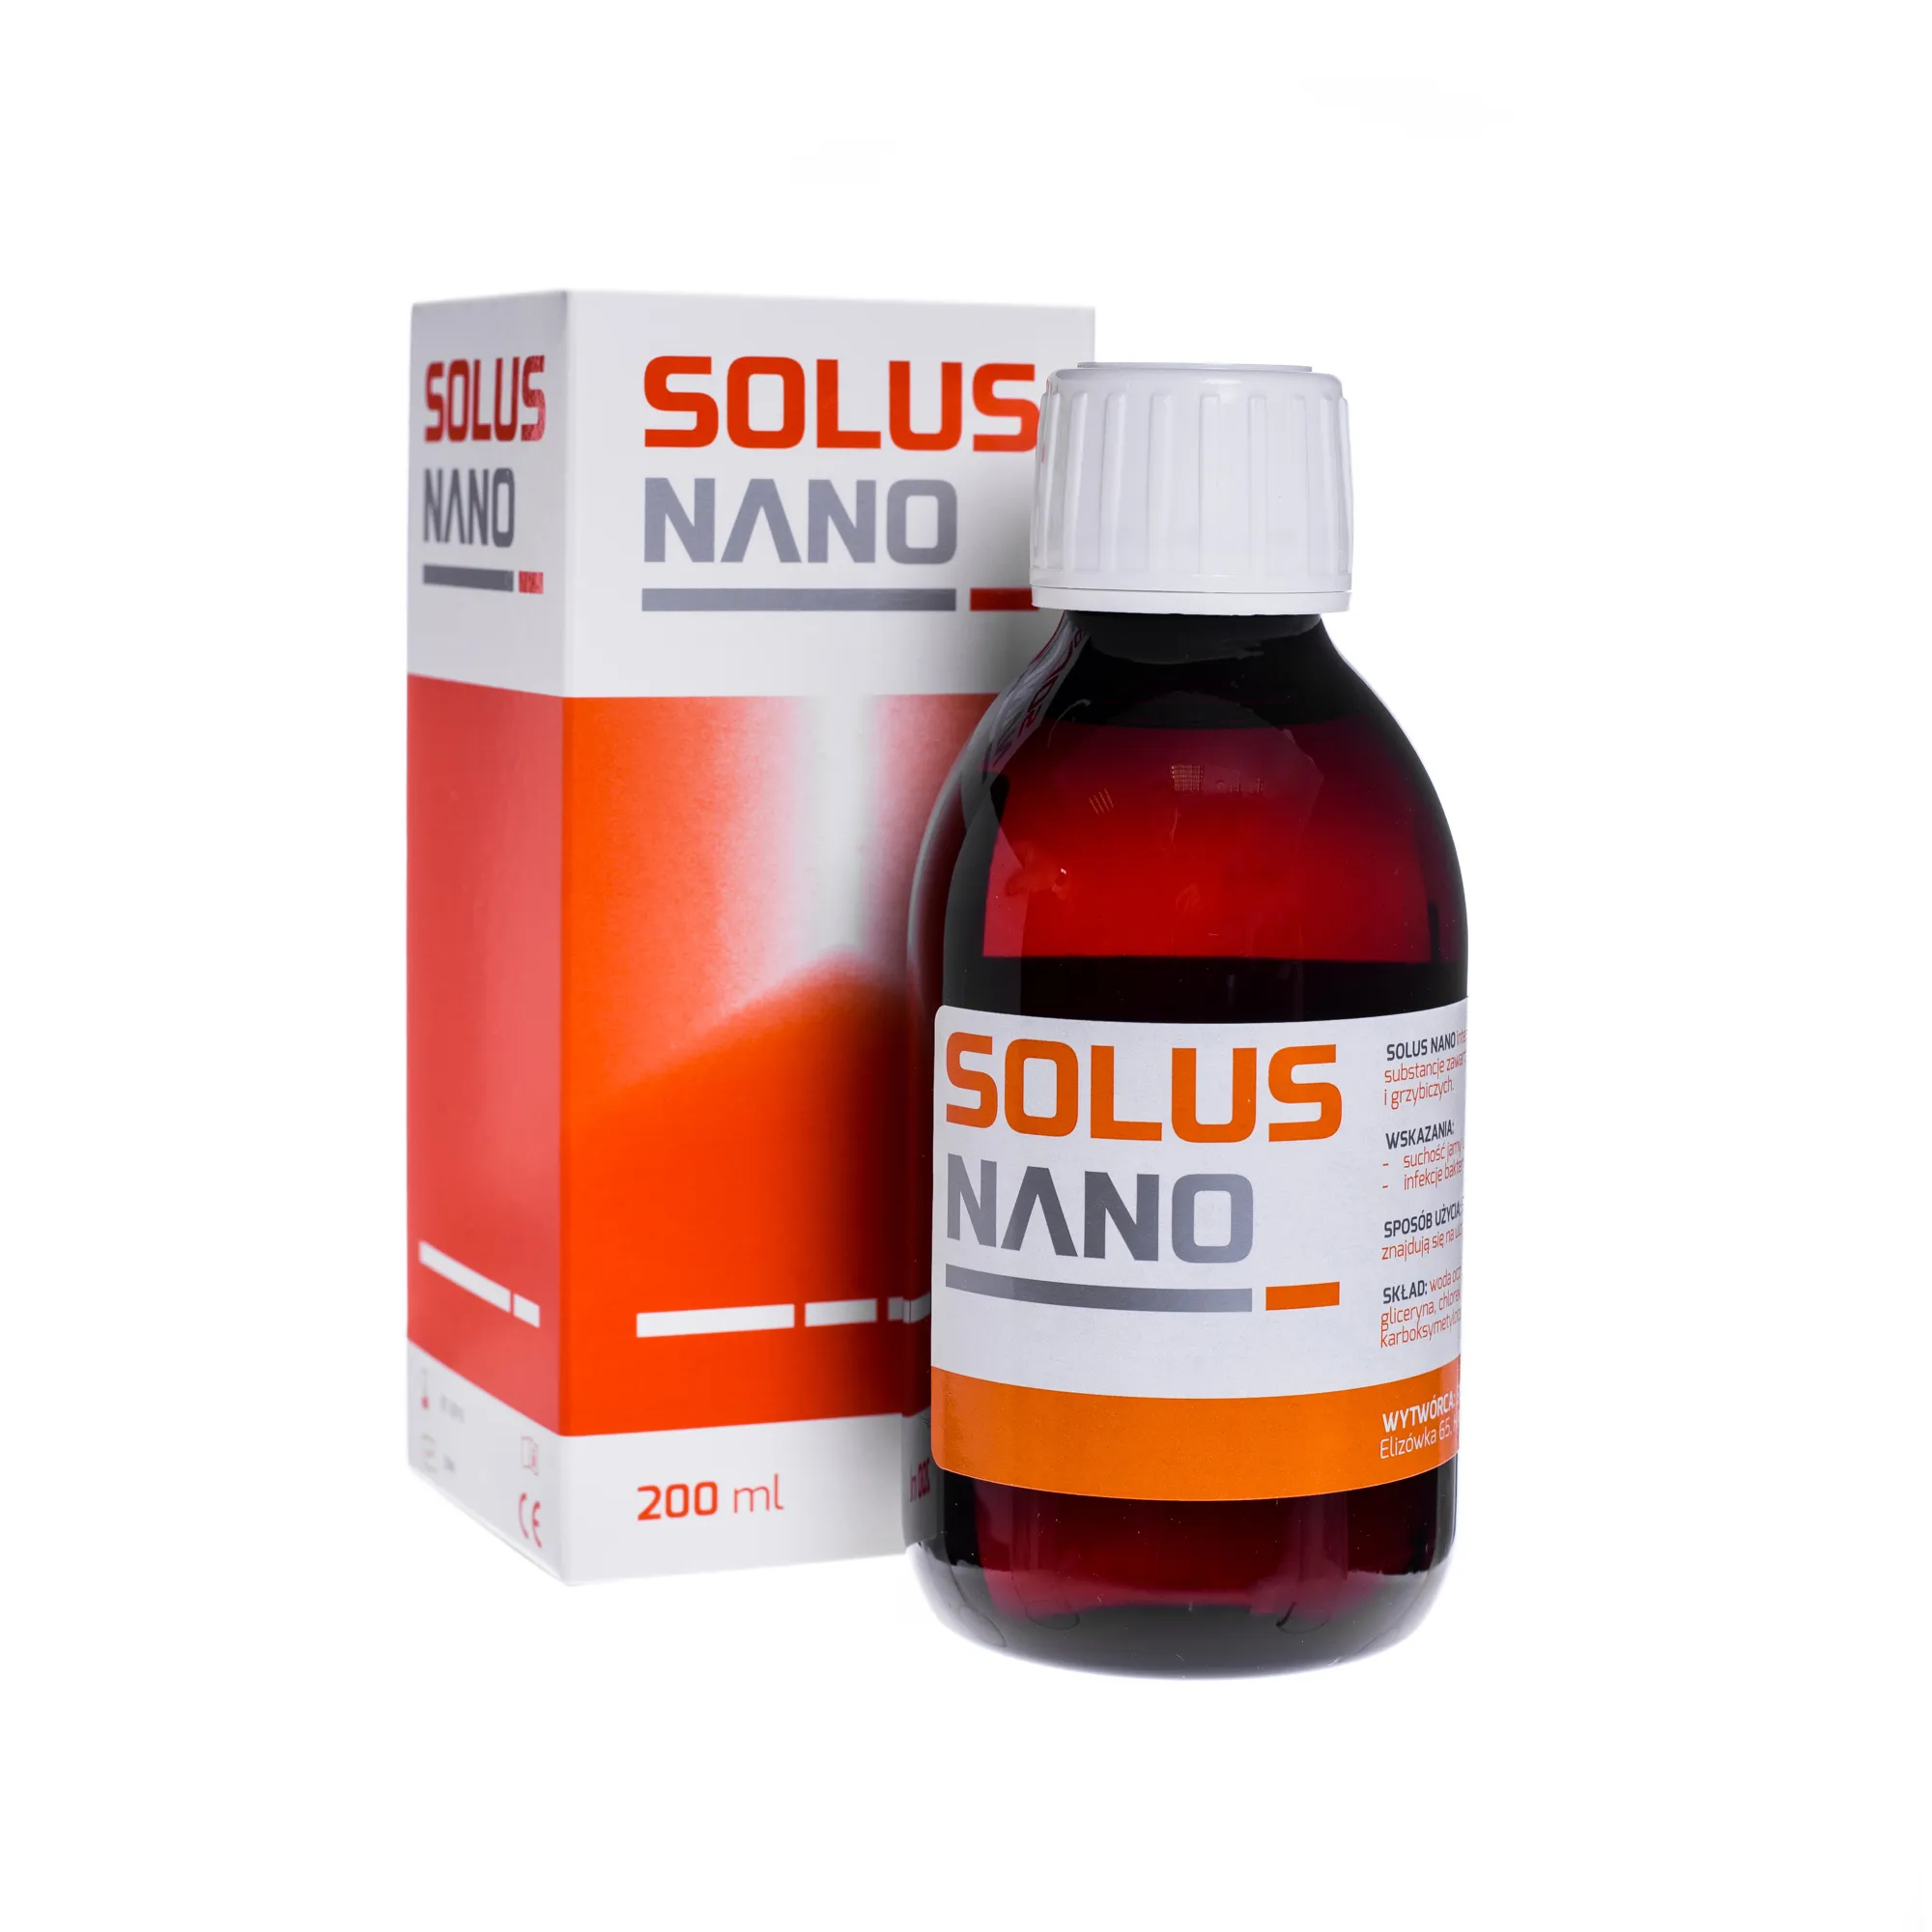 Solus Nano, nawilżający roztwór do jamy ustnej, 200 ml